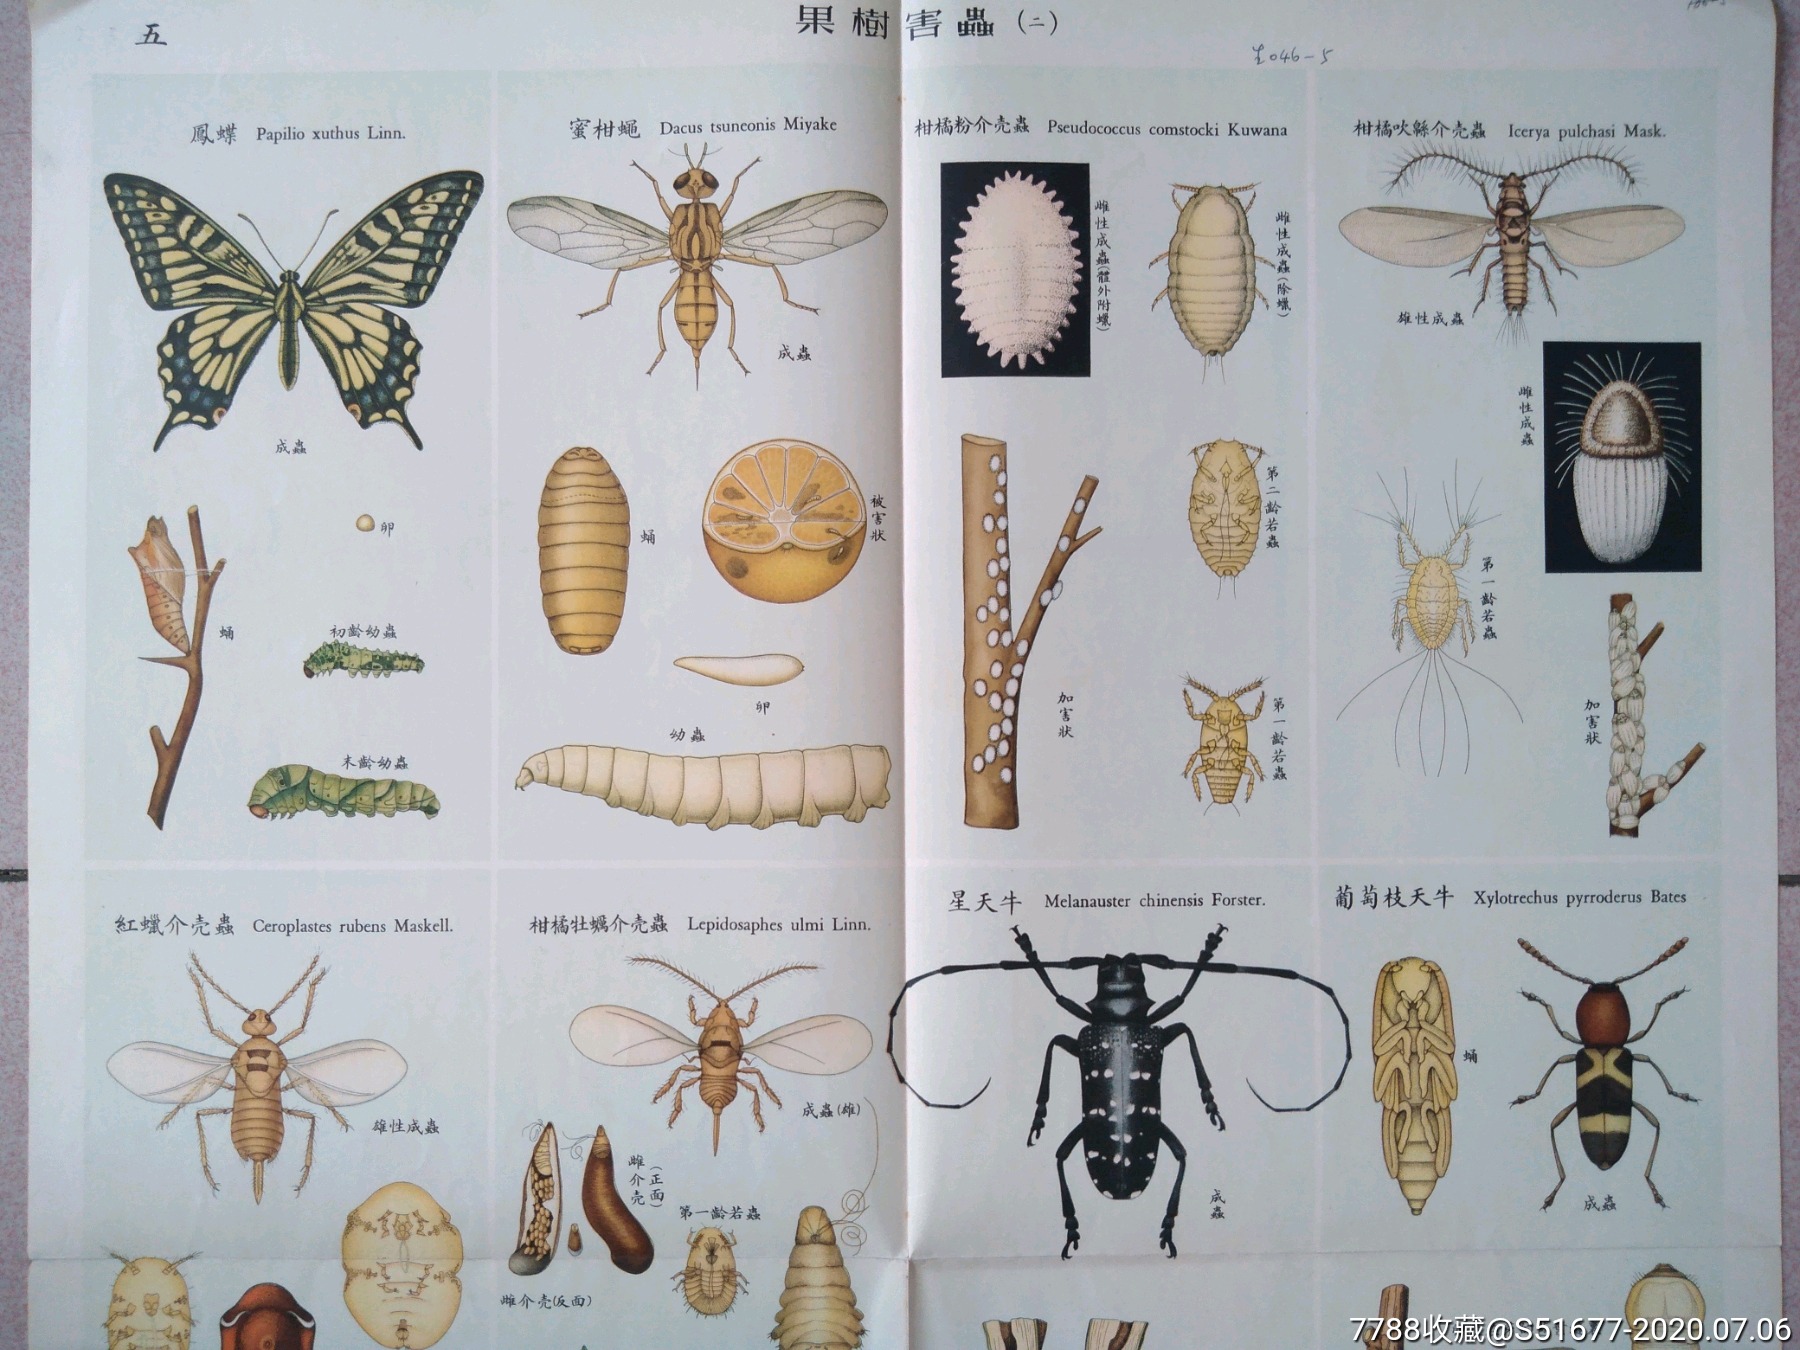 十大害虫名字图片